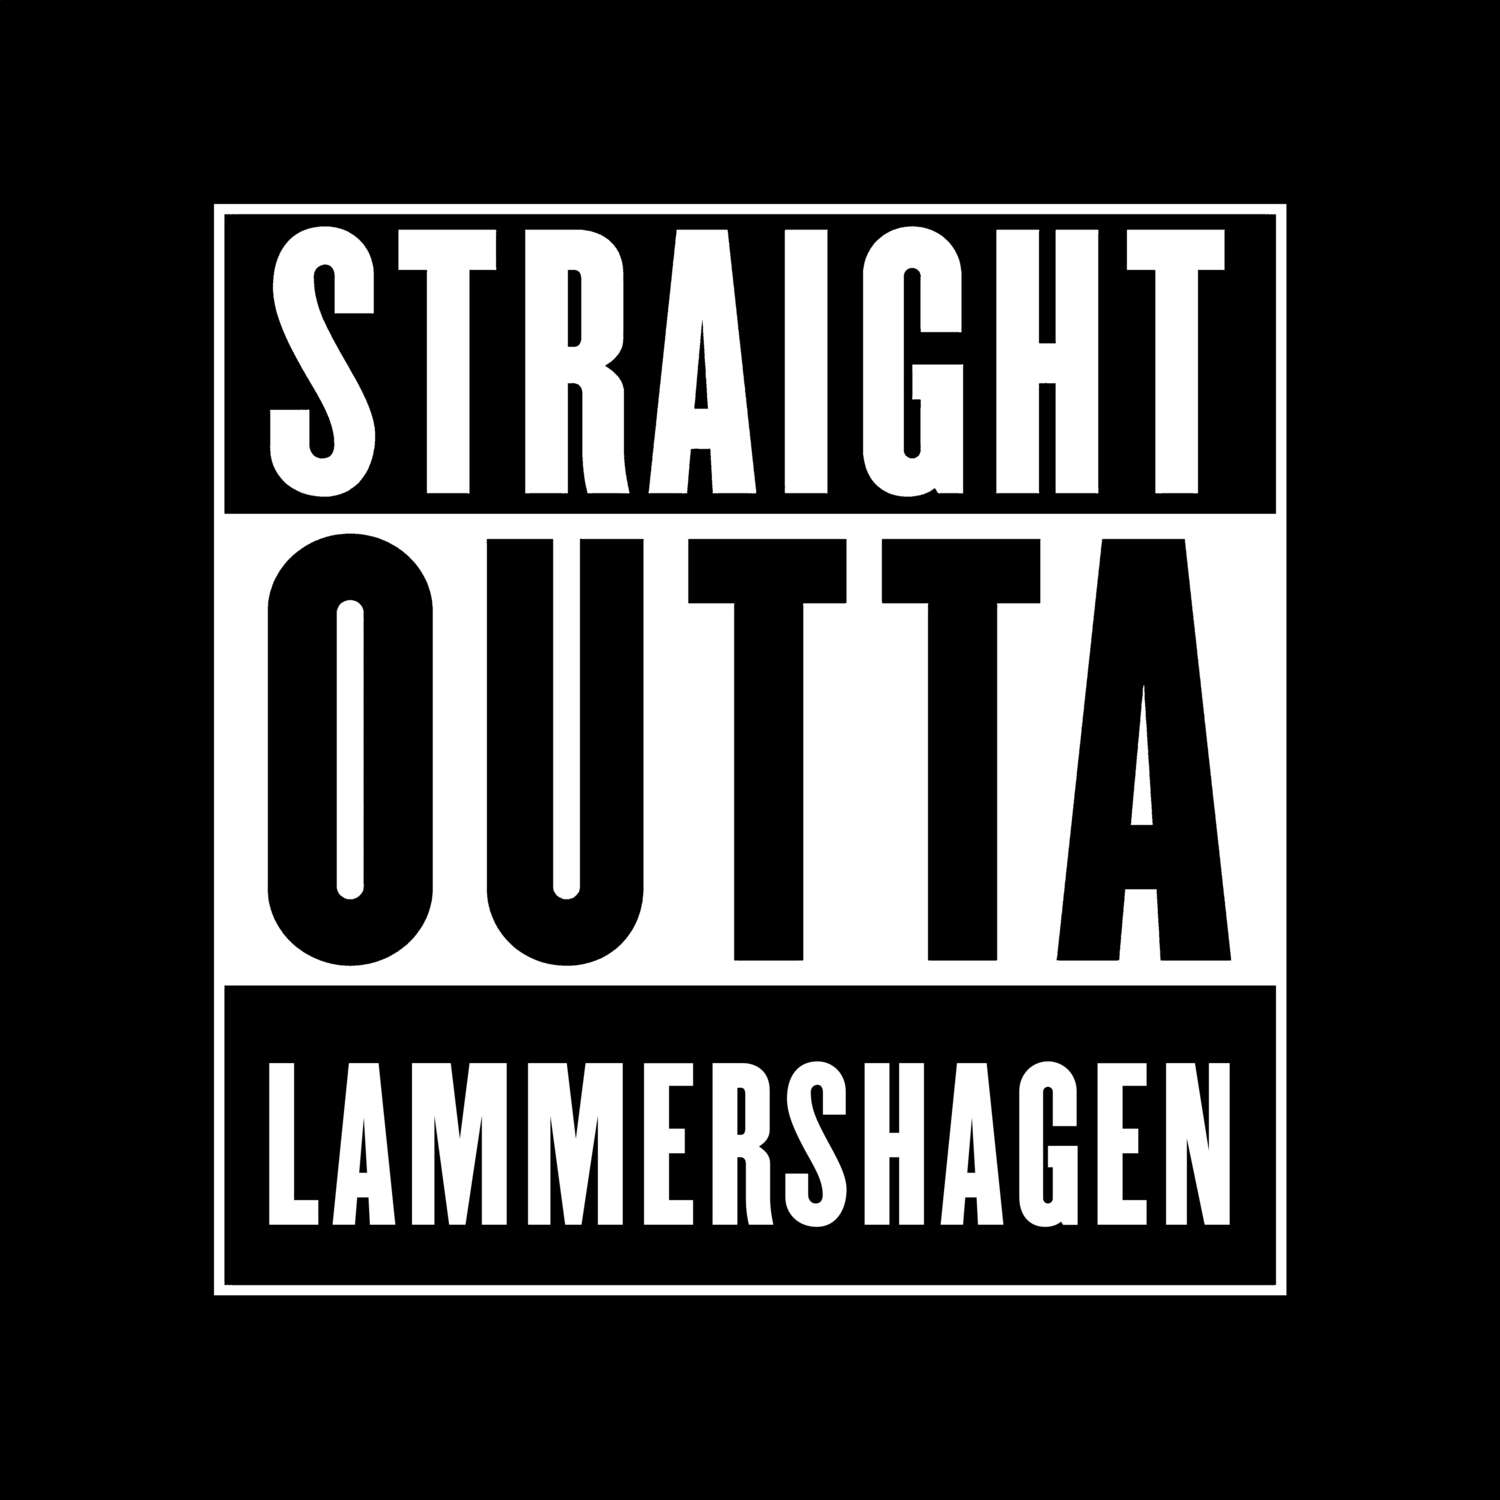 Lammershagen T-Shirt »Straight Outta«